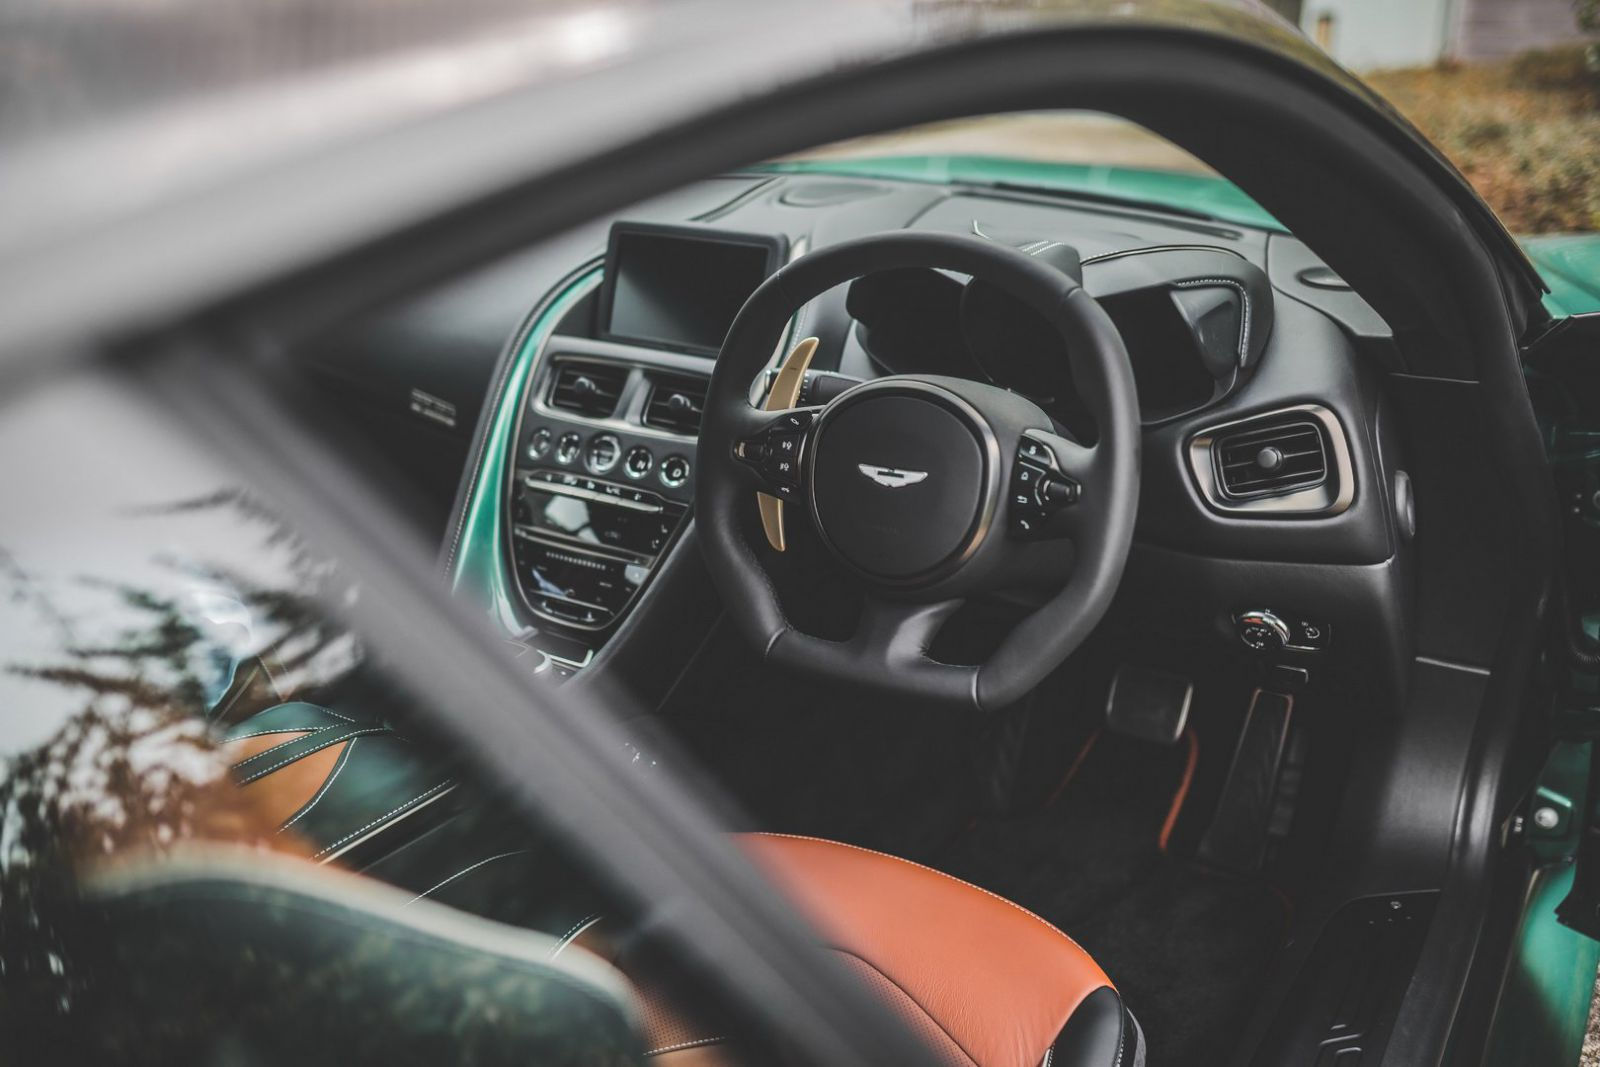 Nội thất của Aston Martin DBS 59 cũng có những điểm nhấn màu xanh lục và màu đồng